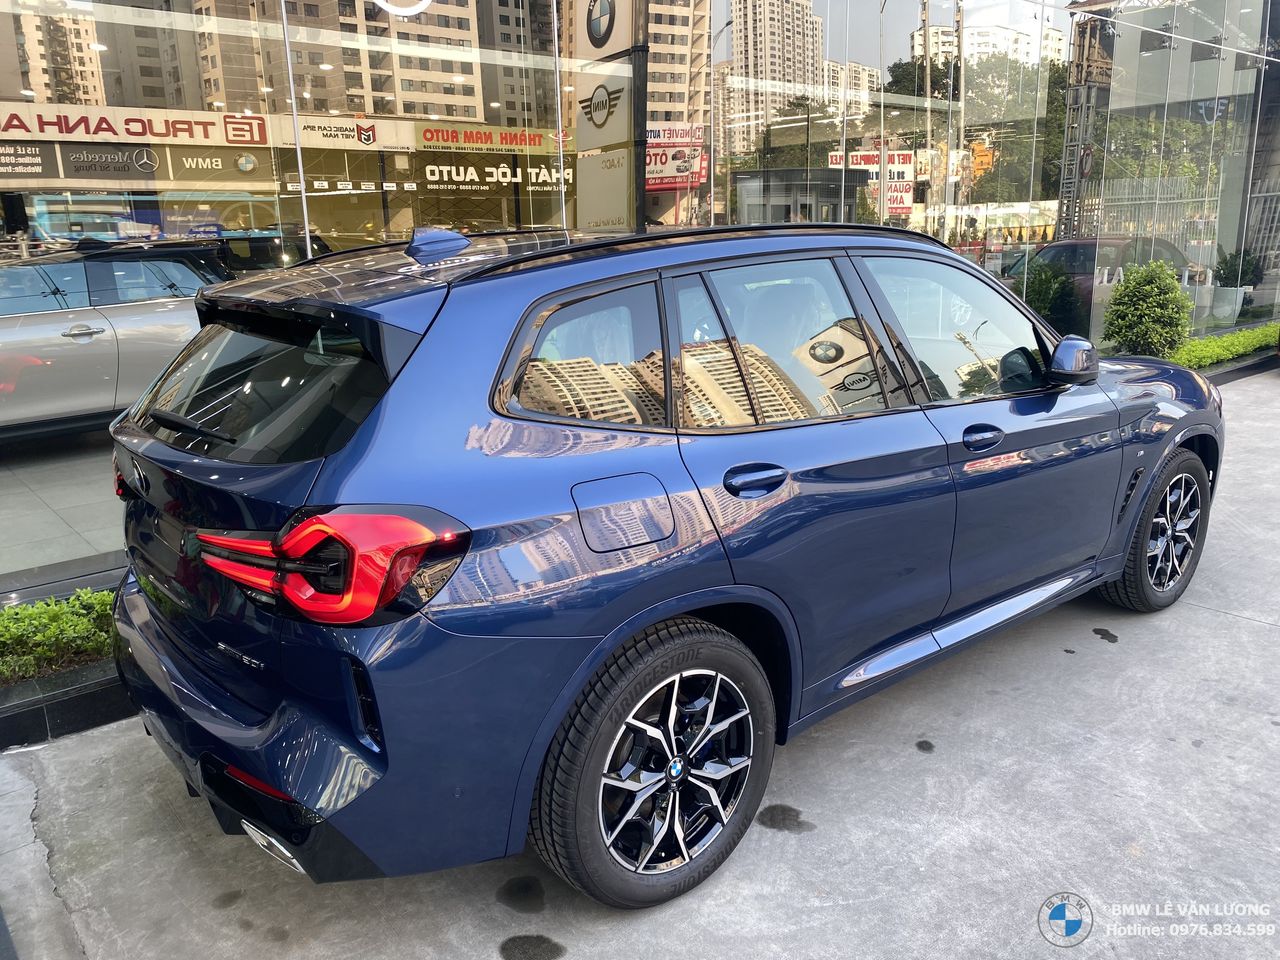 BMW X3 màu xanh